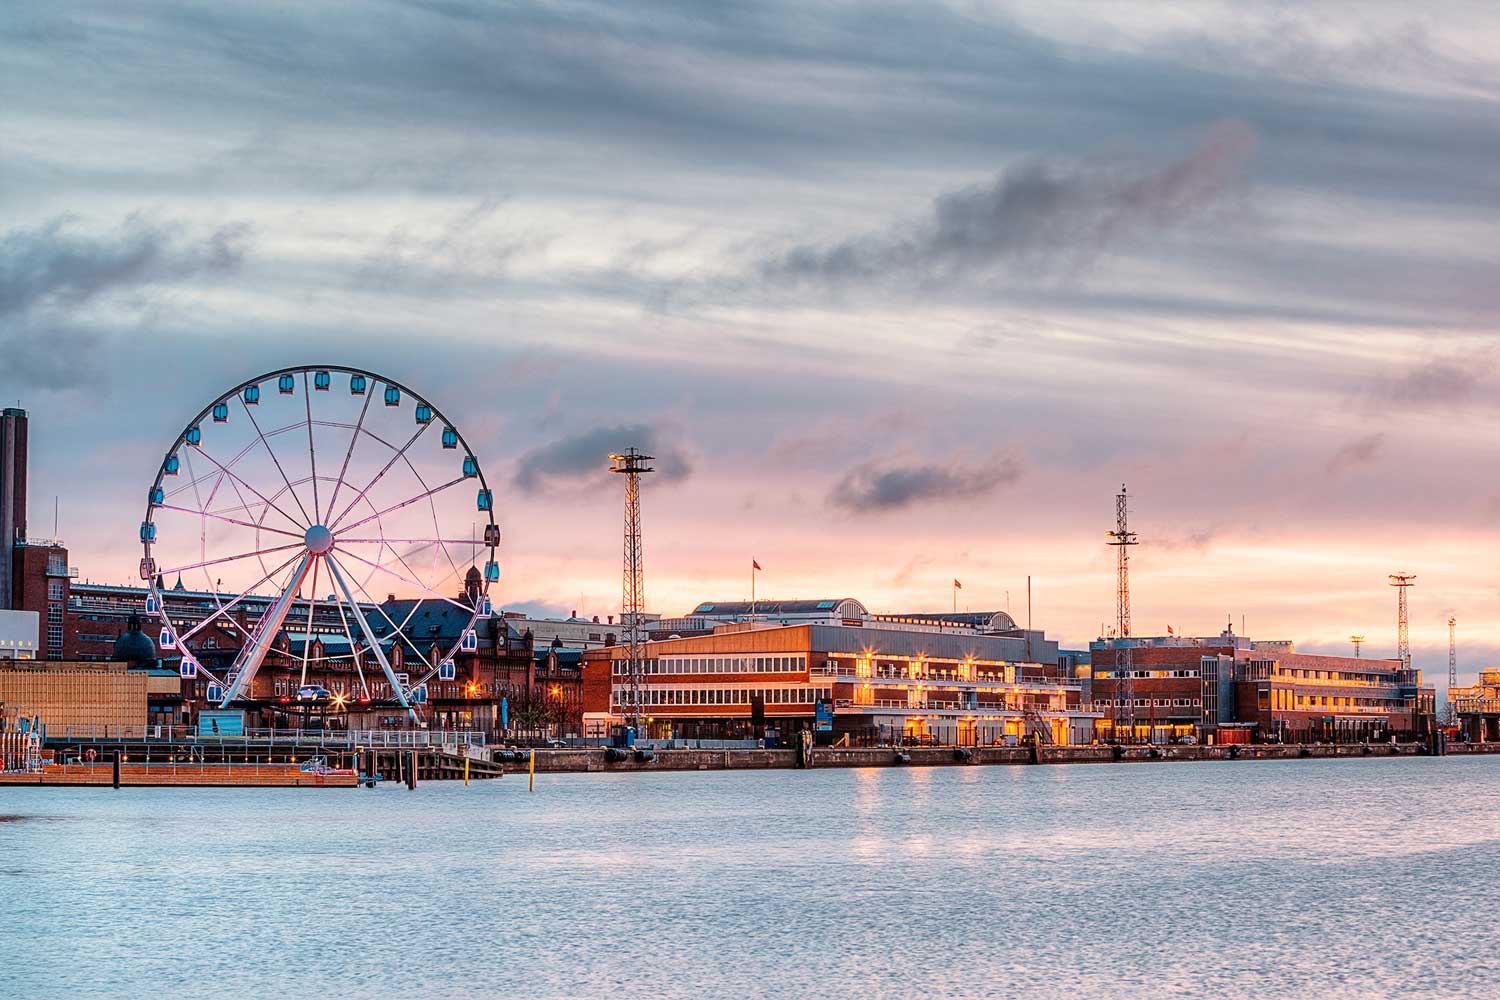 View of the Ferris wheel near the river in Helsinki, Finland.